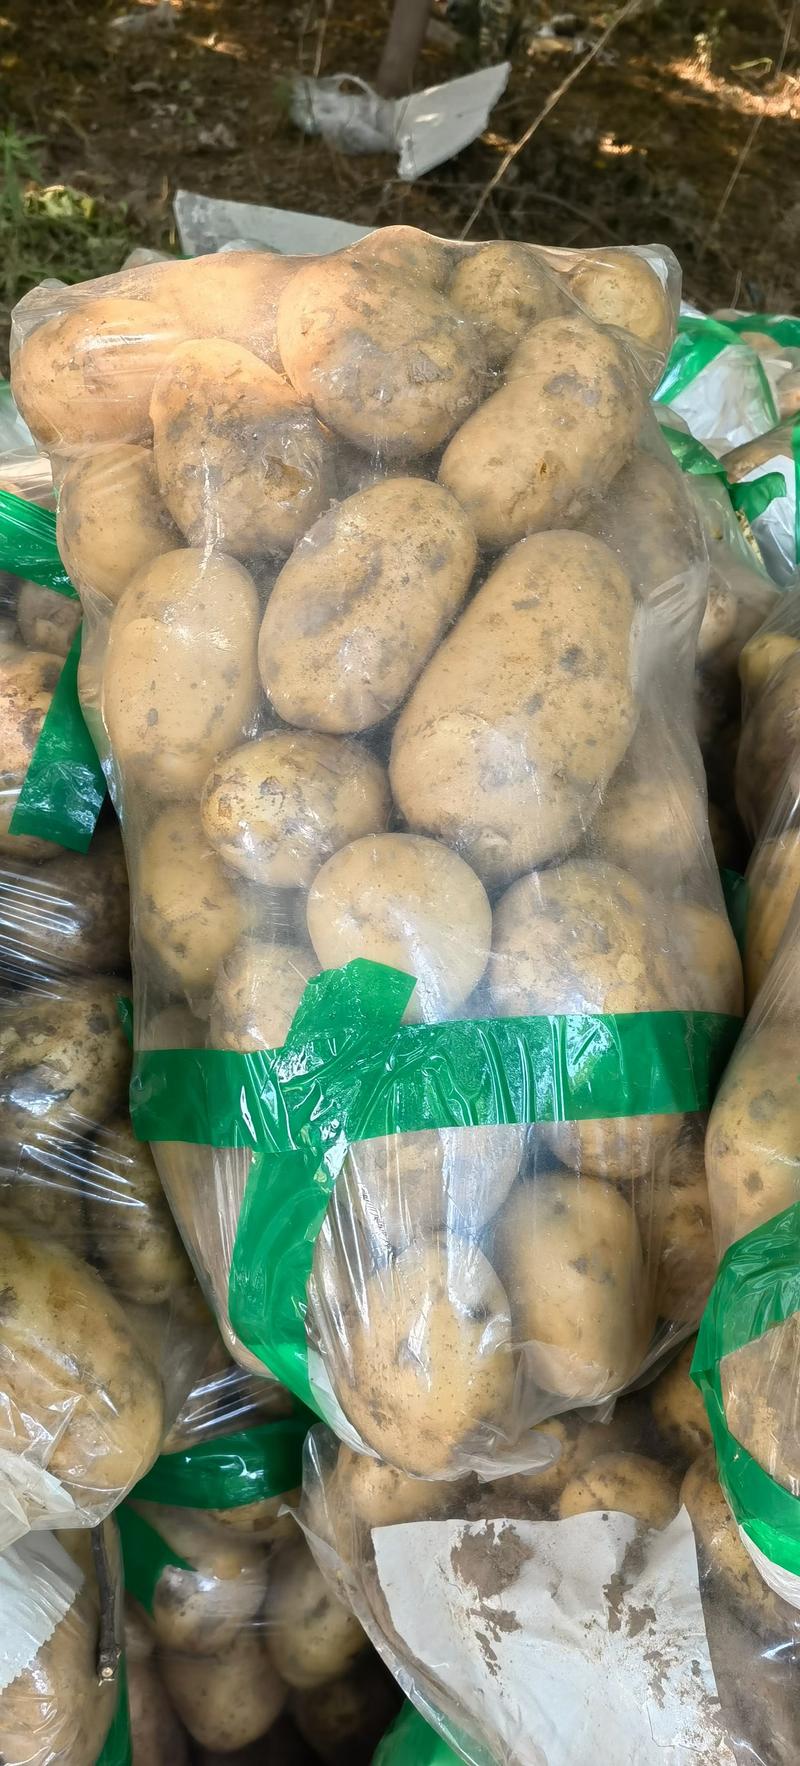 聊城西森土豆规格齐全承接电商加工批发市场有场地工人设备